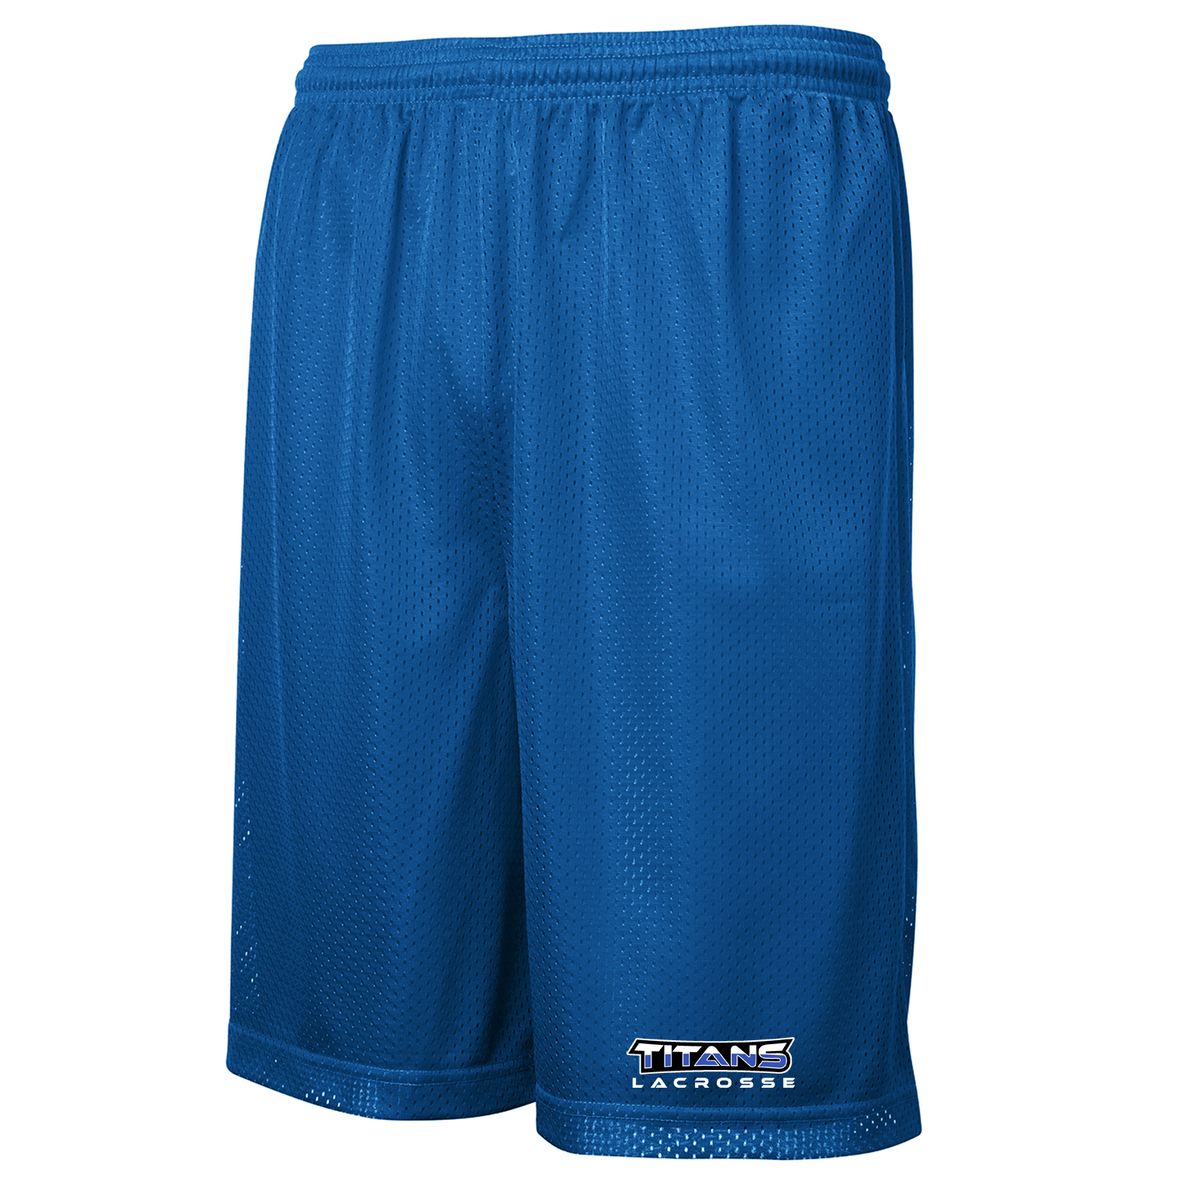 Southwest Titans Lacrosse Classic Mesh Shorts